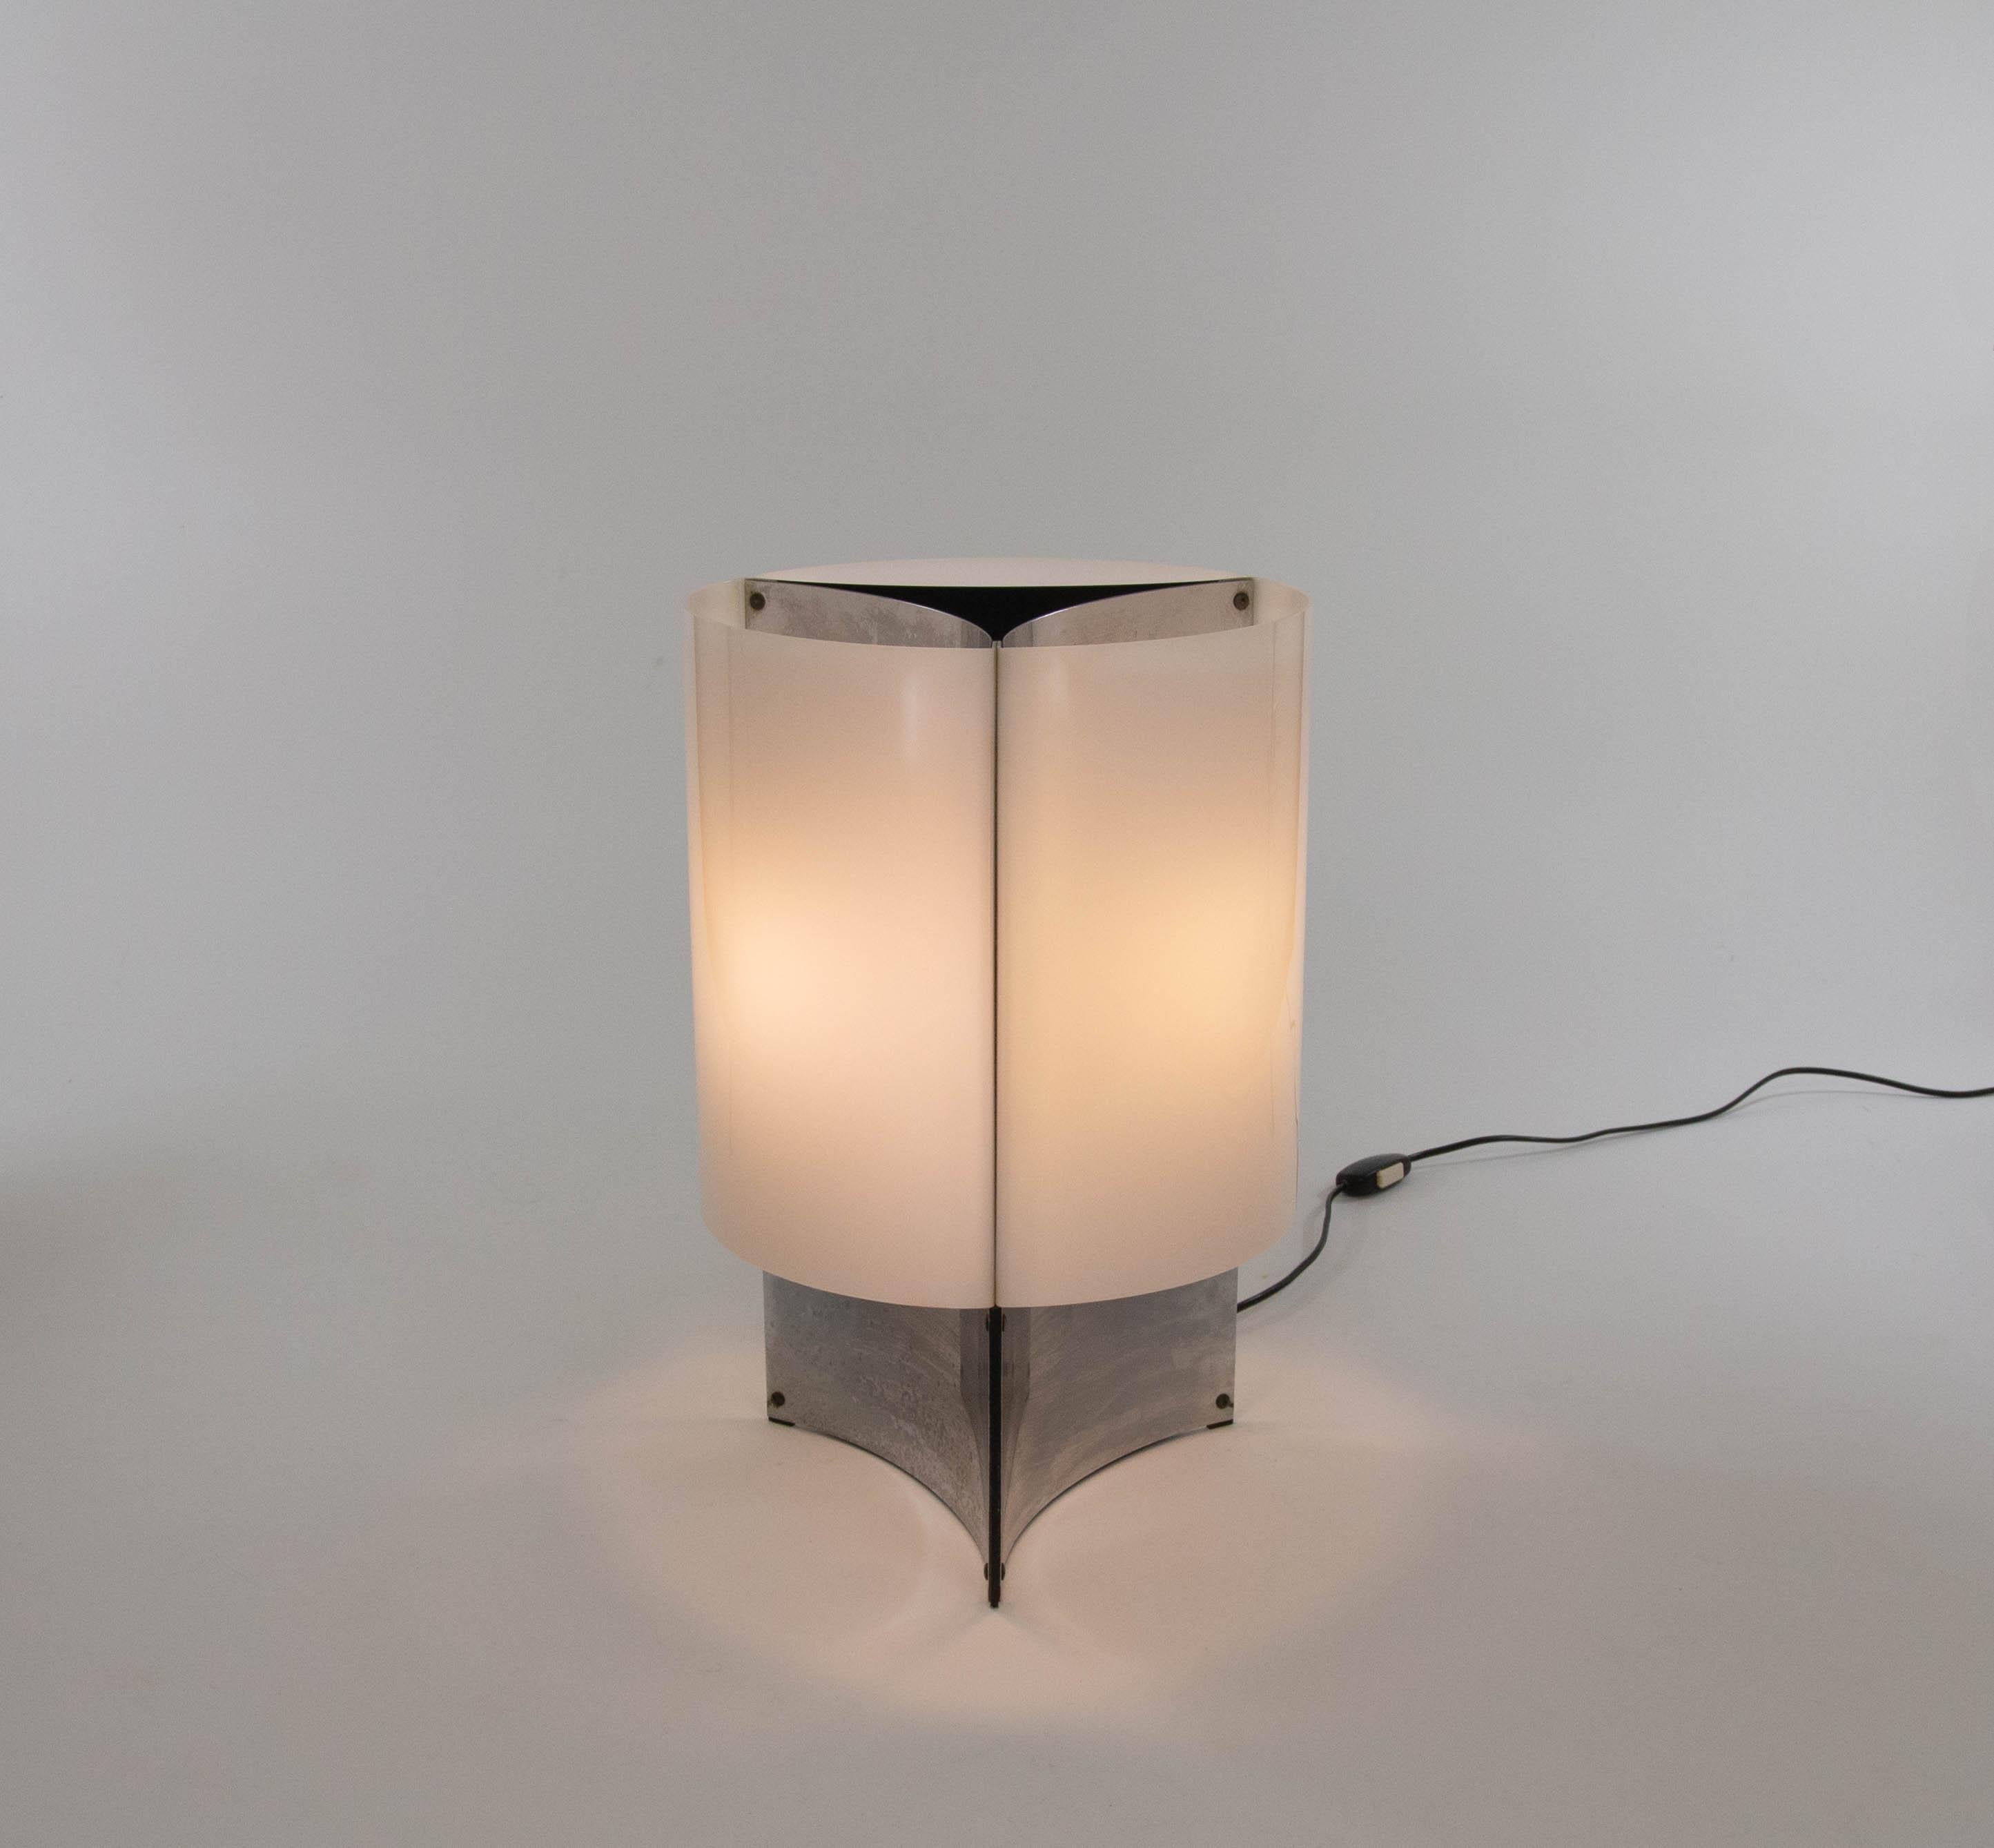 Cette élégante lampe modèle 526 a été conçue en 1965 par Massimo Vignelli pour le fabricant italien de luminaires Arteluce.

Le modèle 526 est une lampe de table dont la base est constituée de trois feuilles chromées concaves. Cette base est